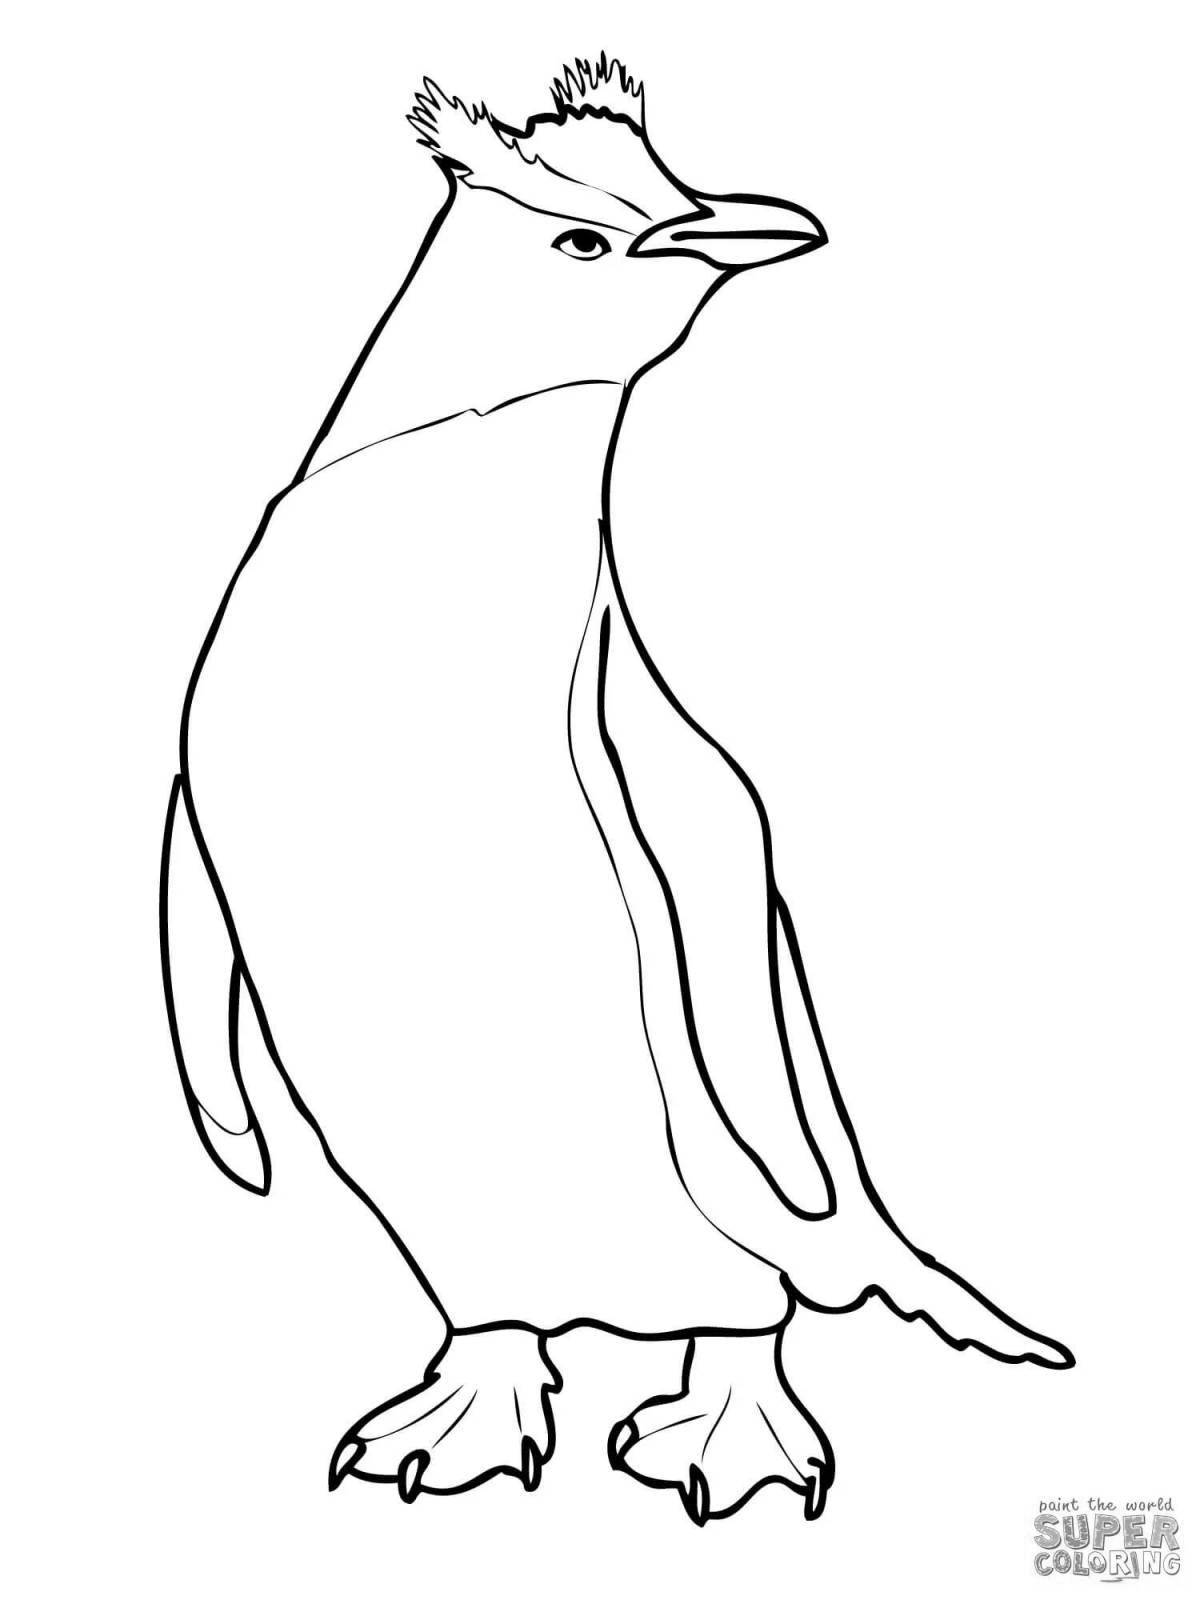 Великолепные пингвины антарктиды